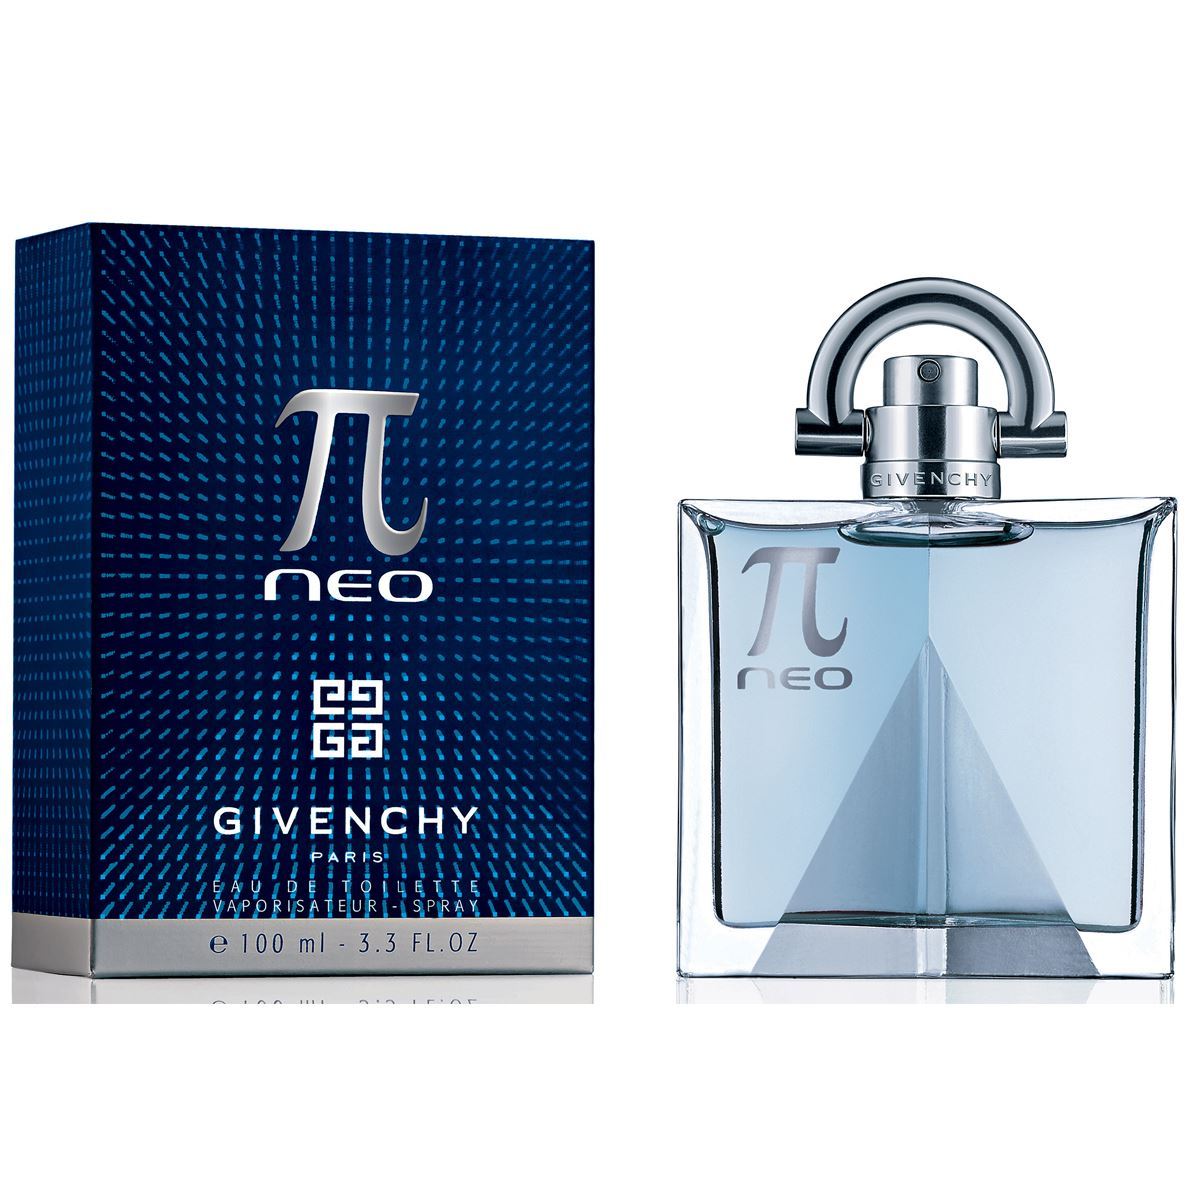 GIVENCHY - Pi Neo para hombre / 100 ml Eau De Toilette Spray | PerfumesFinos.com.mx